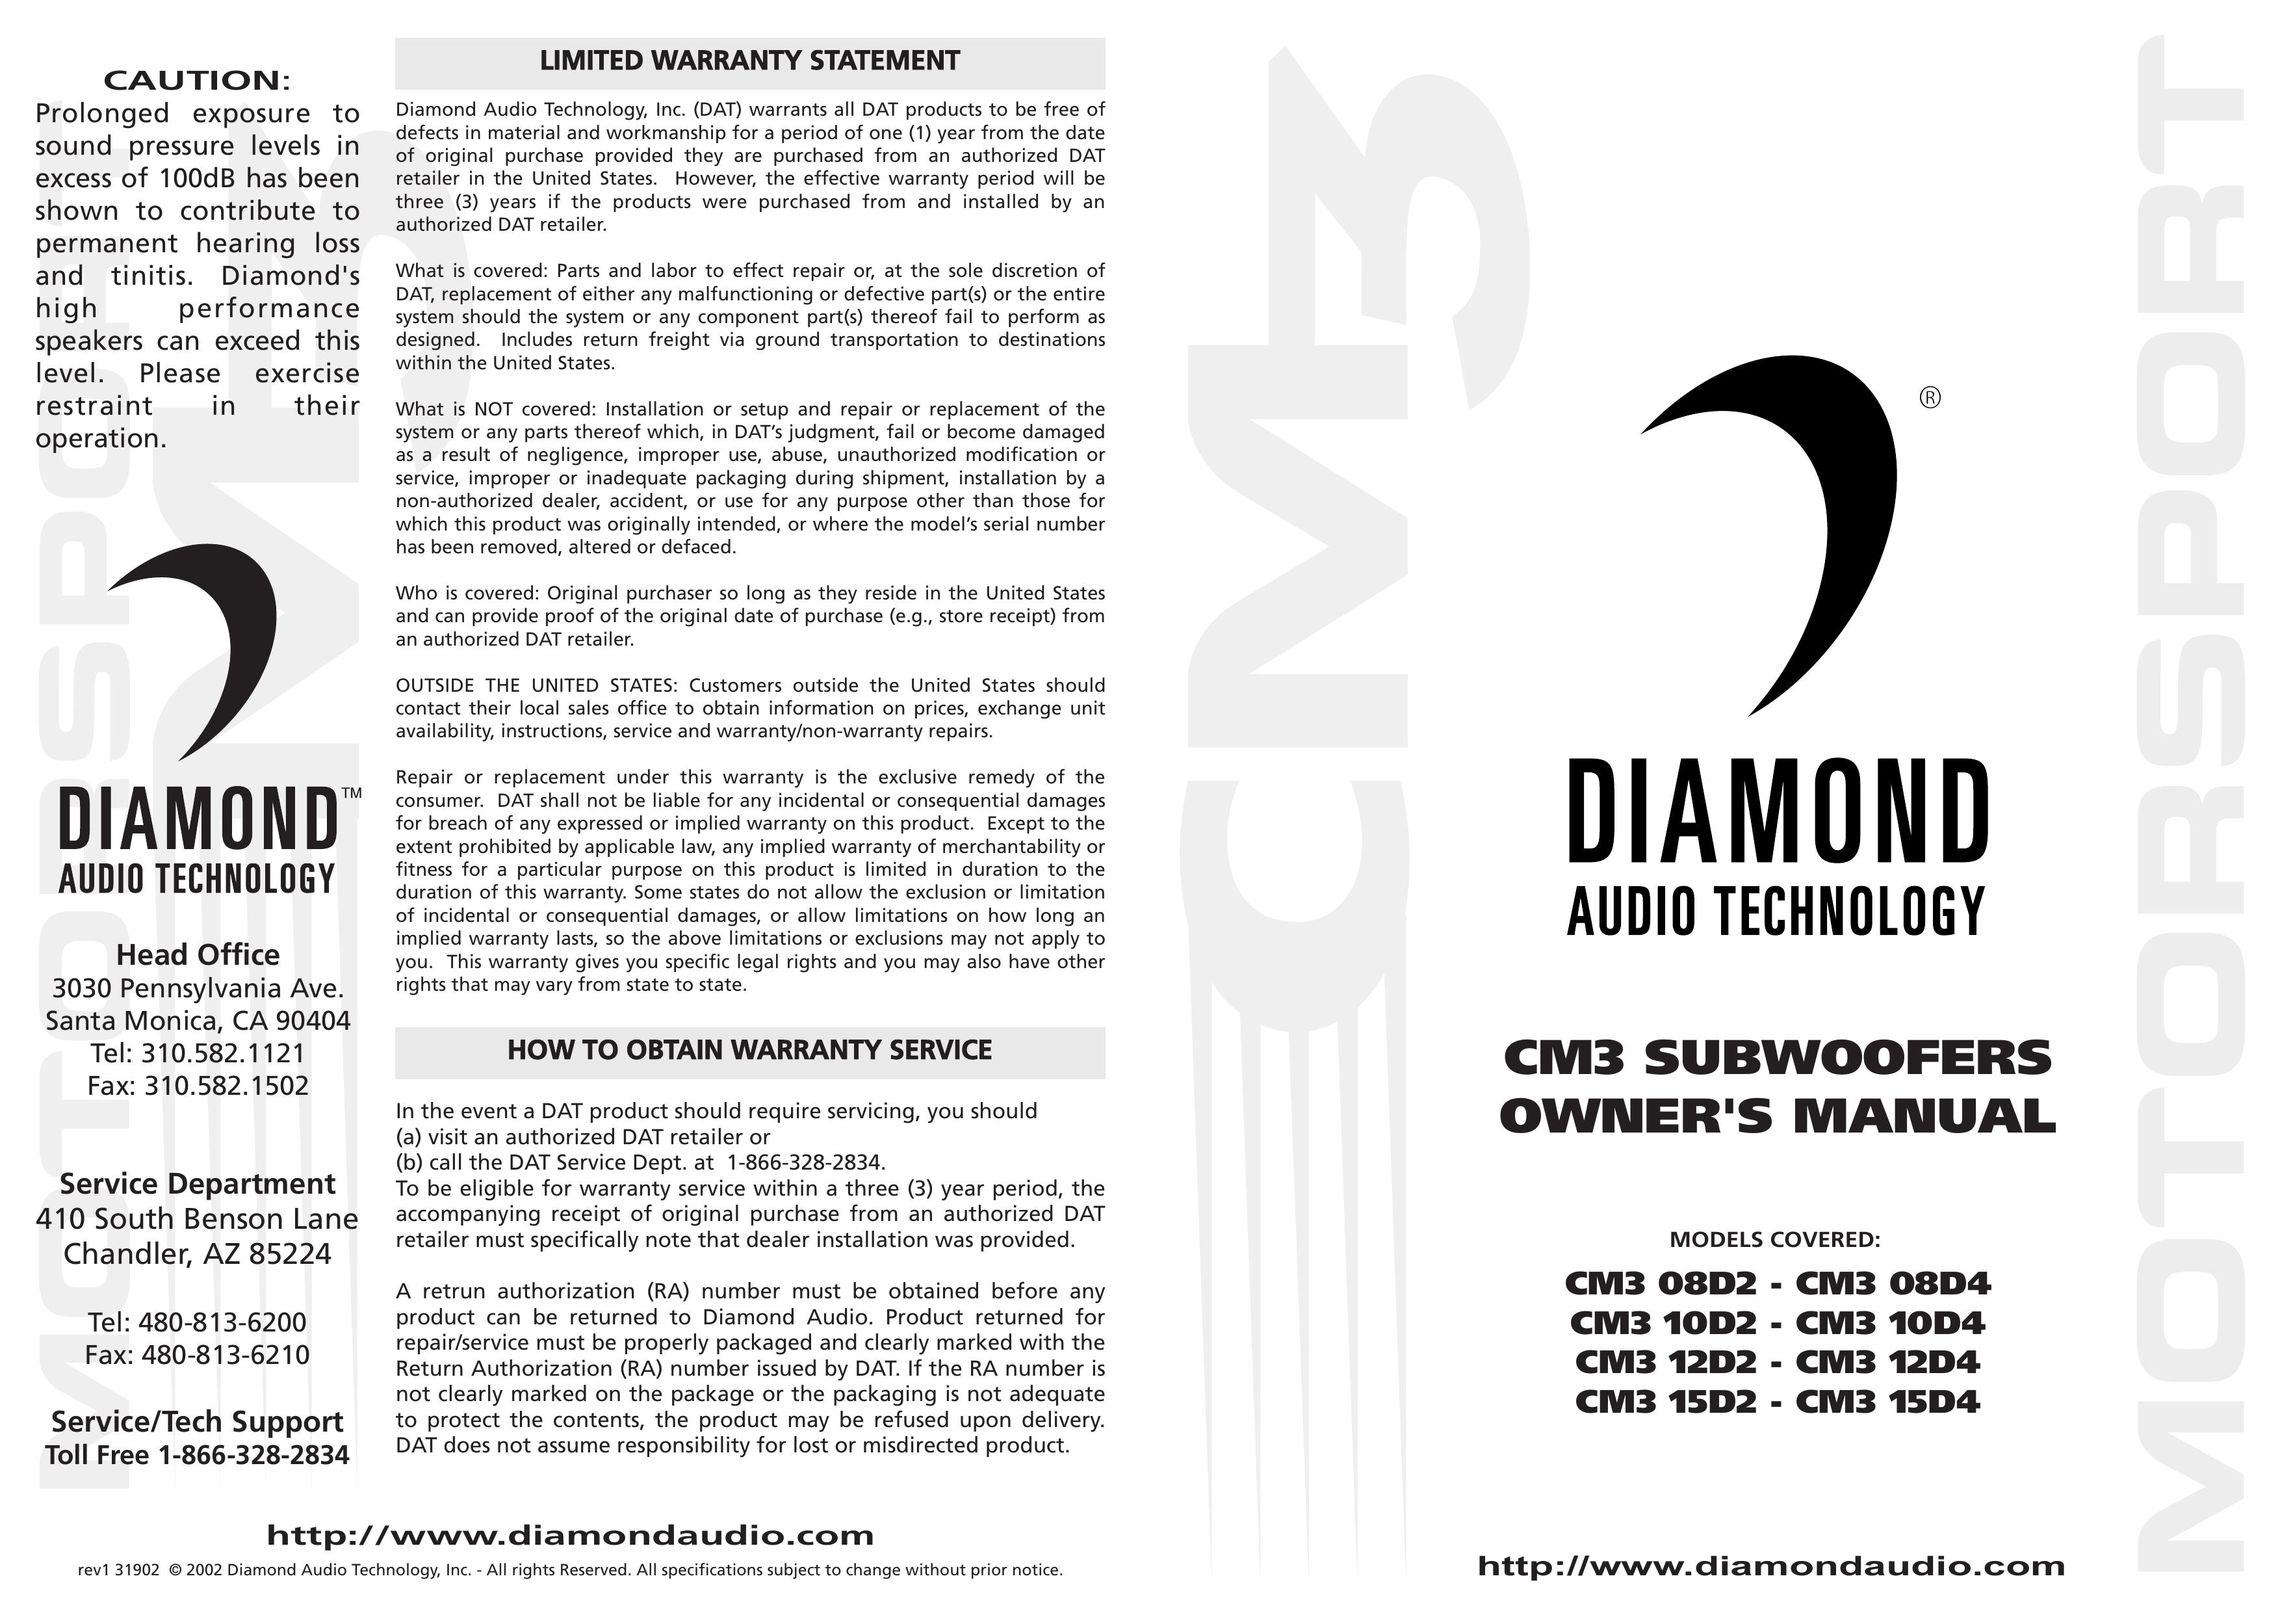 Diamond Audio Technology CM3 12D4 Speaker User Manual